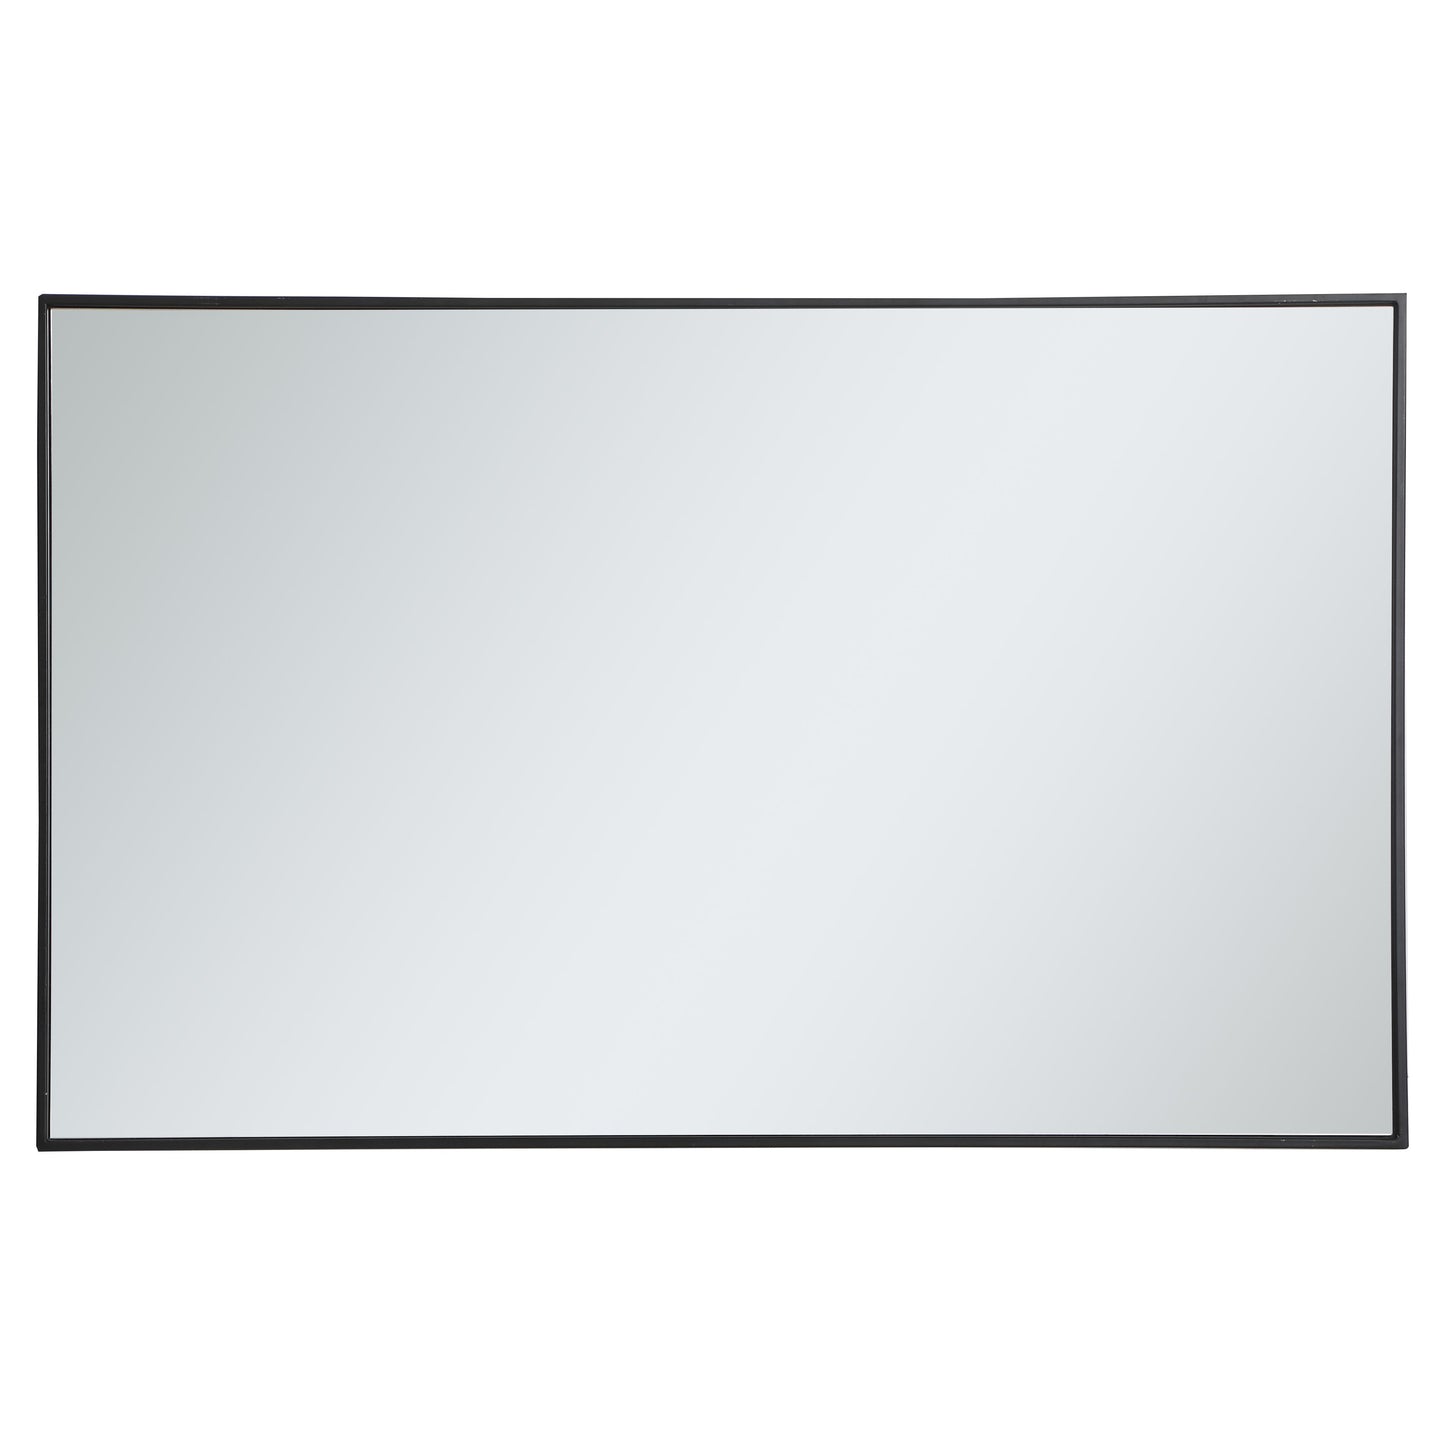 MR43048BK Monet 30" x 48" Metal Framed Rectangular Mirror in Black